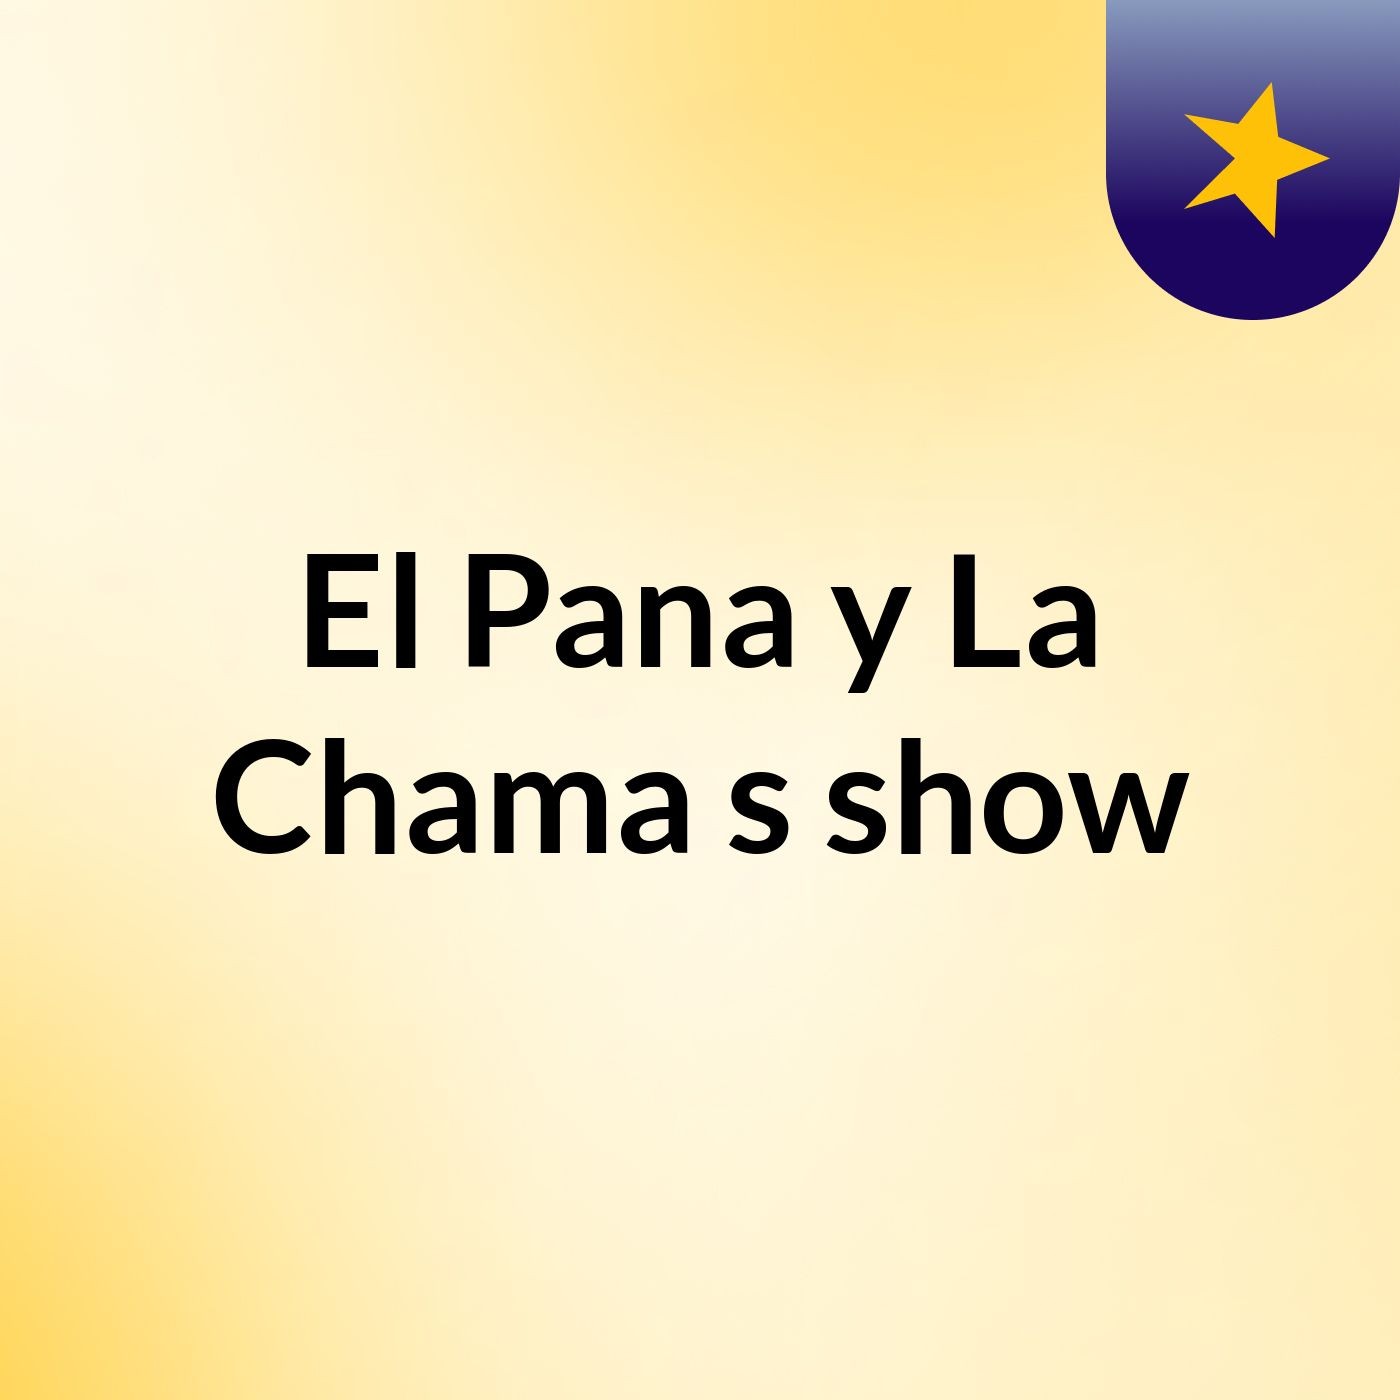 El Pana y La Chama's show